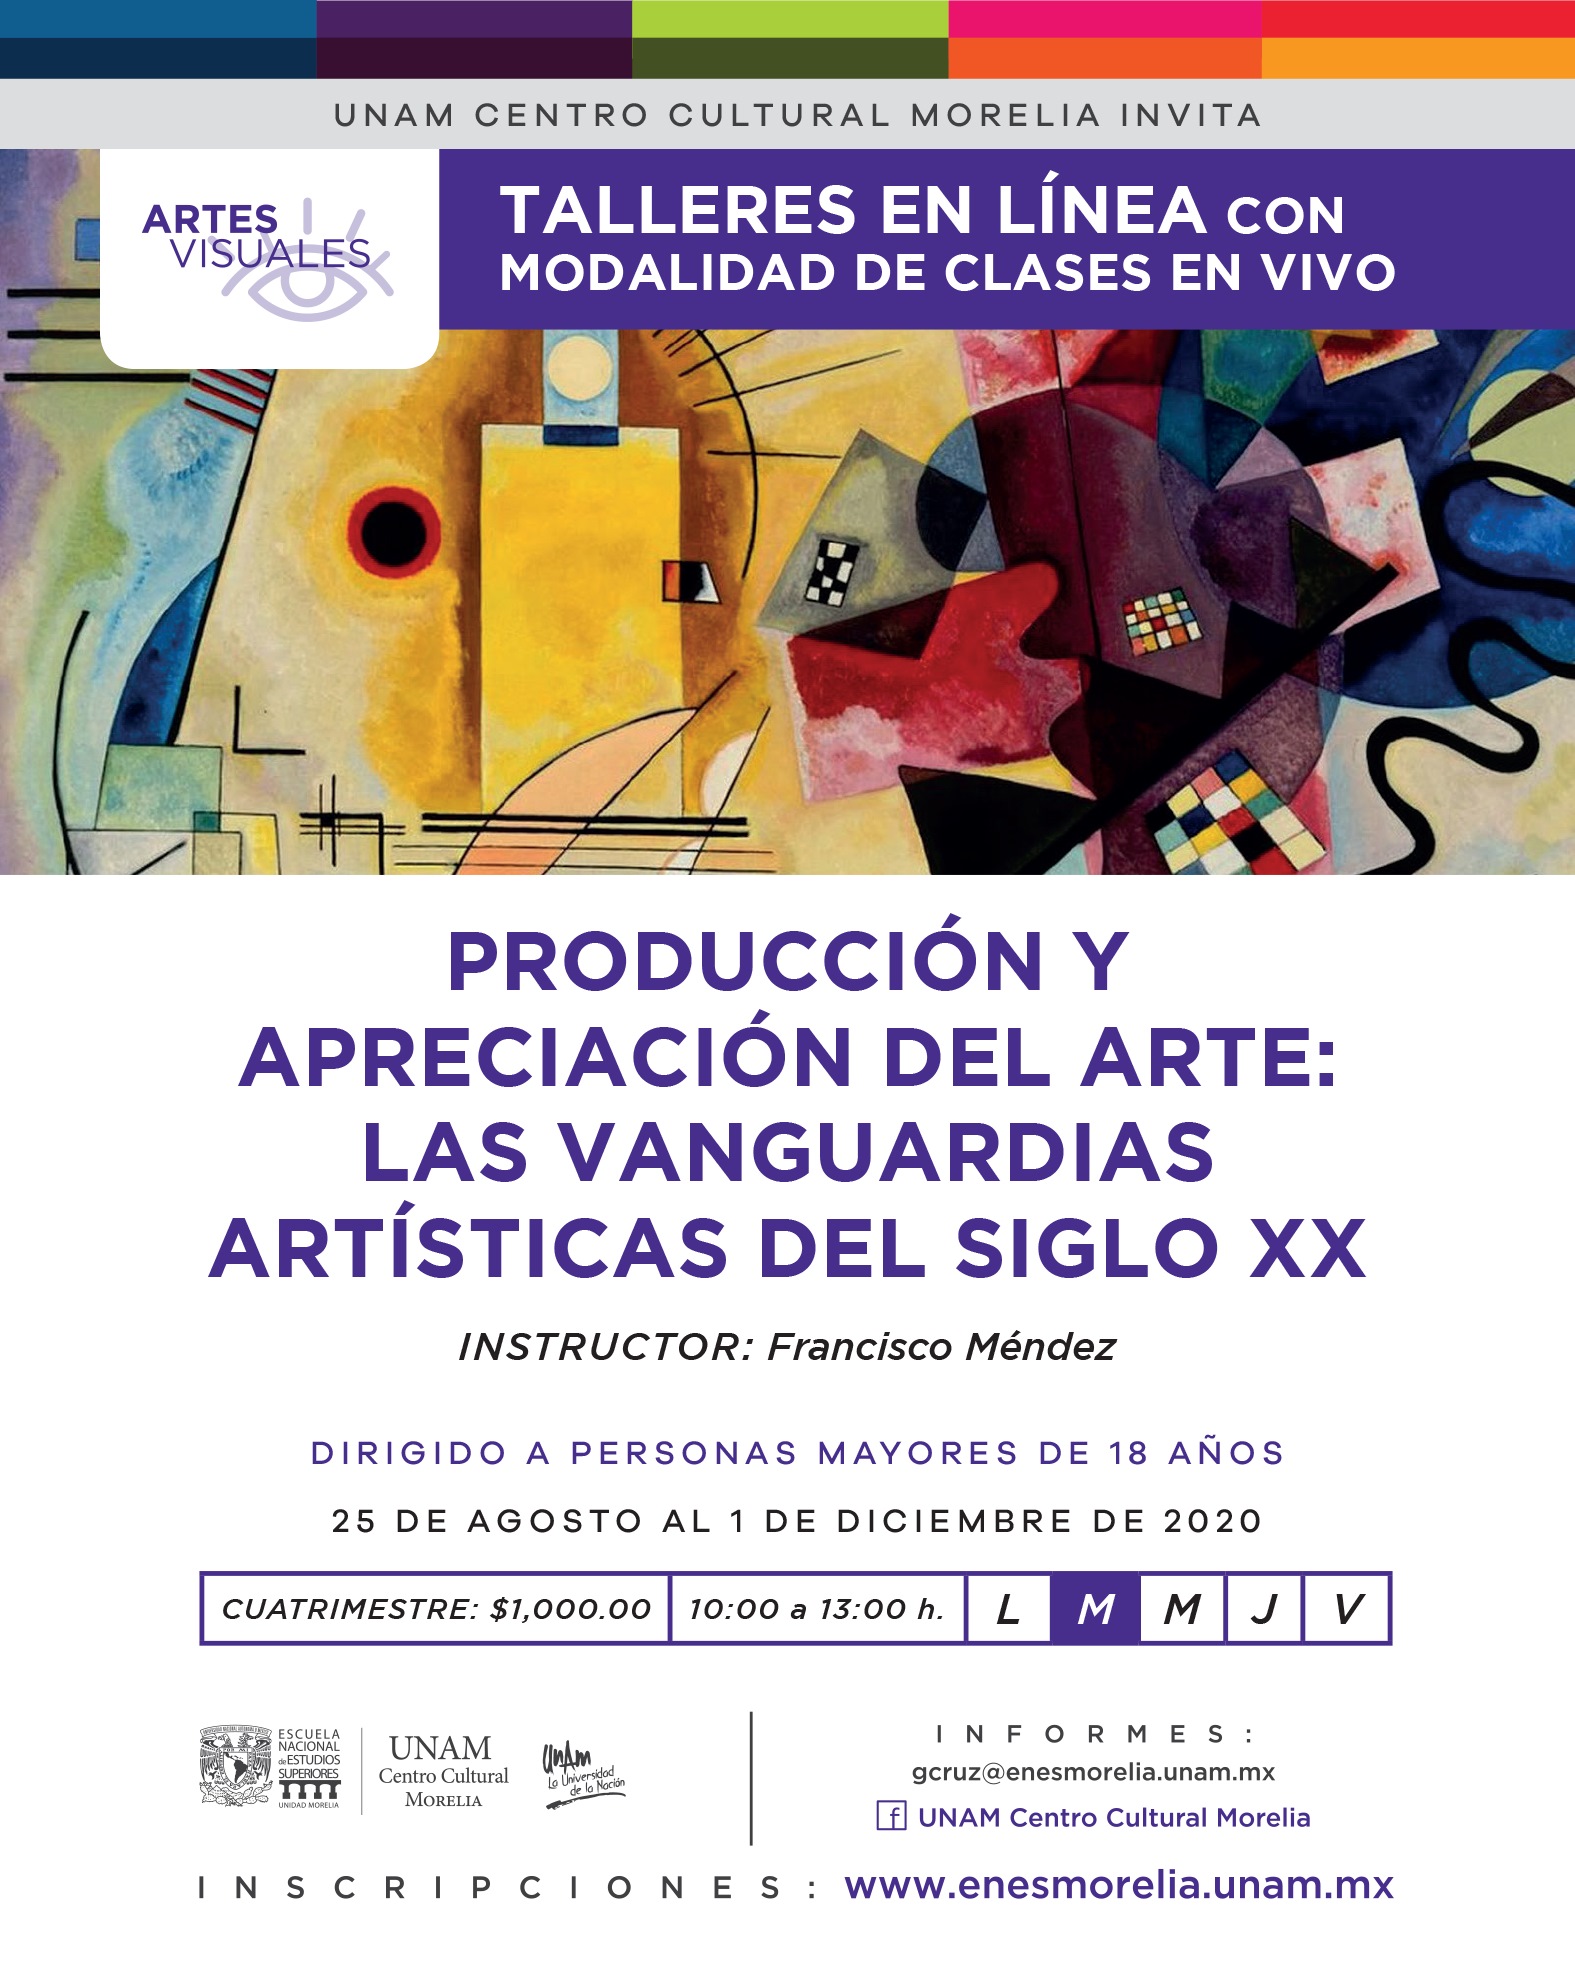 PRODUCCIÓN Y APRECIACIÓN DEL ARTE: LAS VANGUARDIAS ARTÍSTICAS DEL SIGLO XX